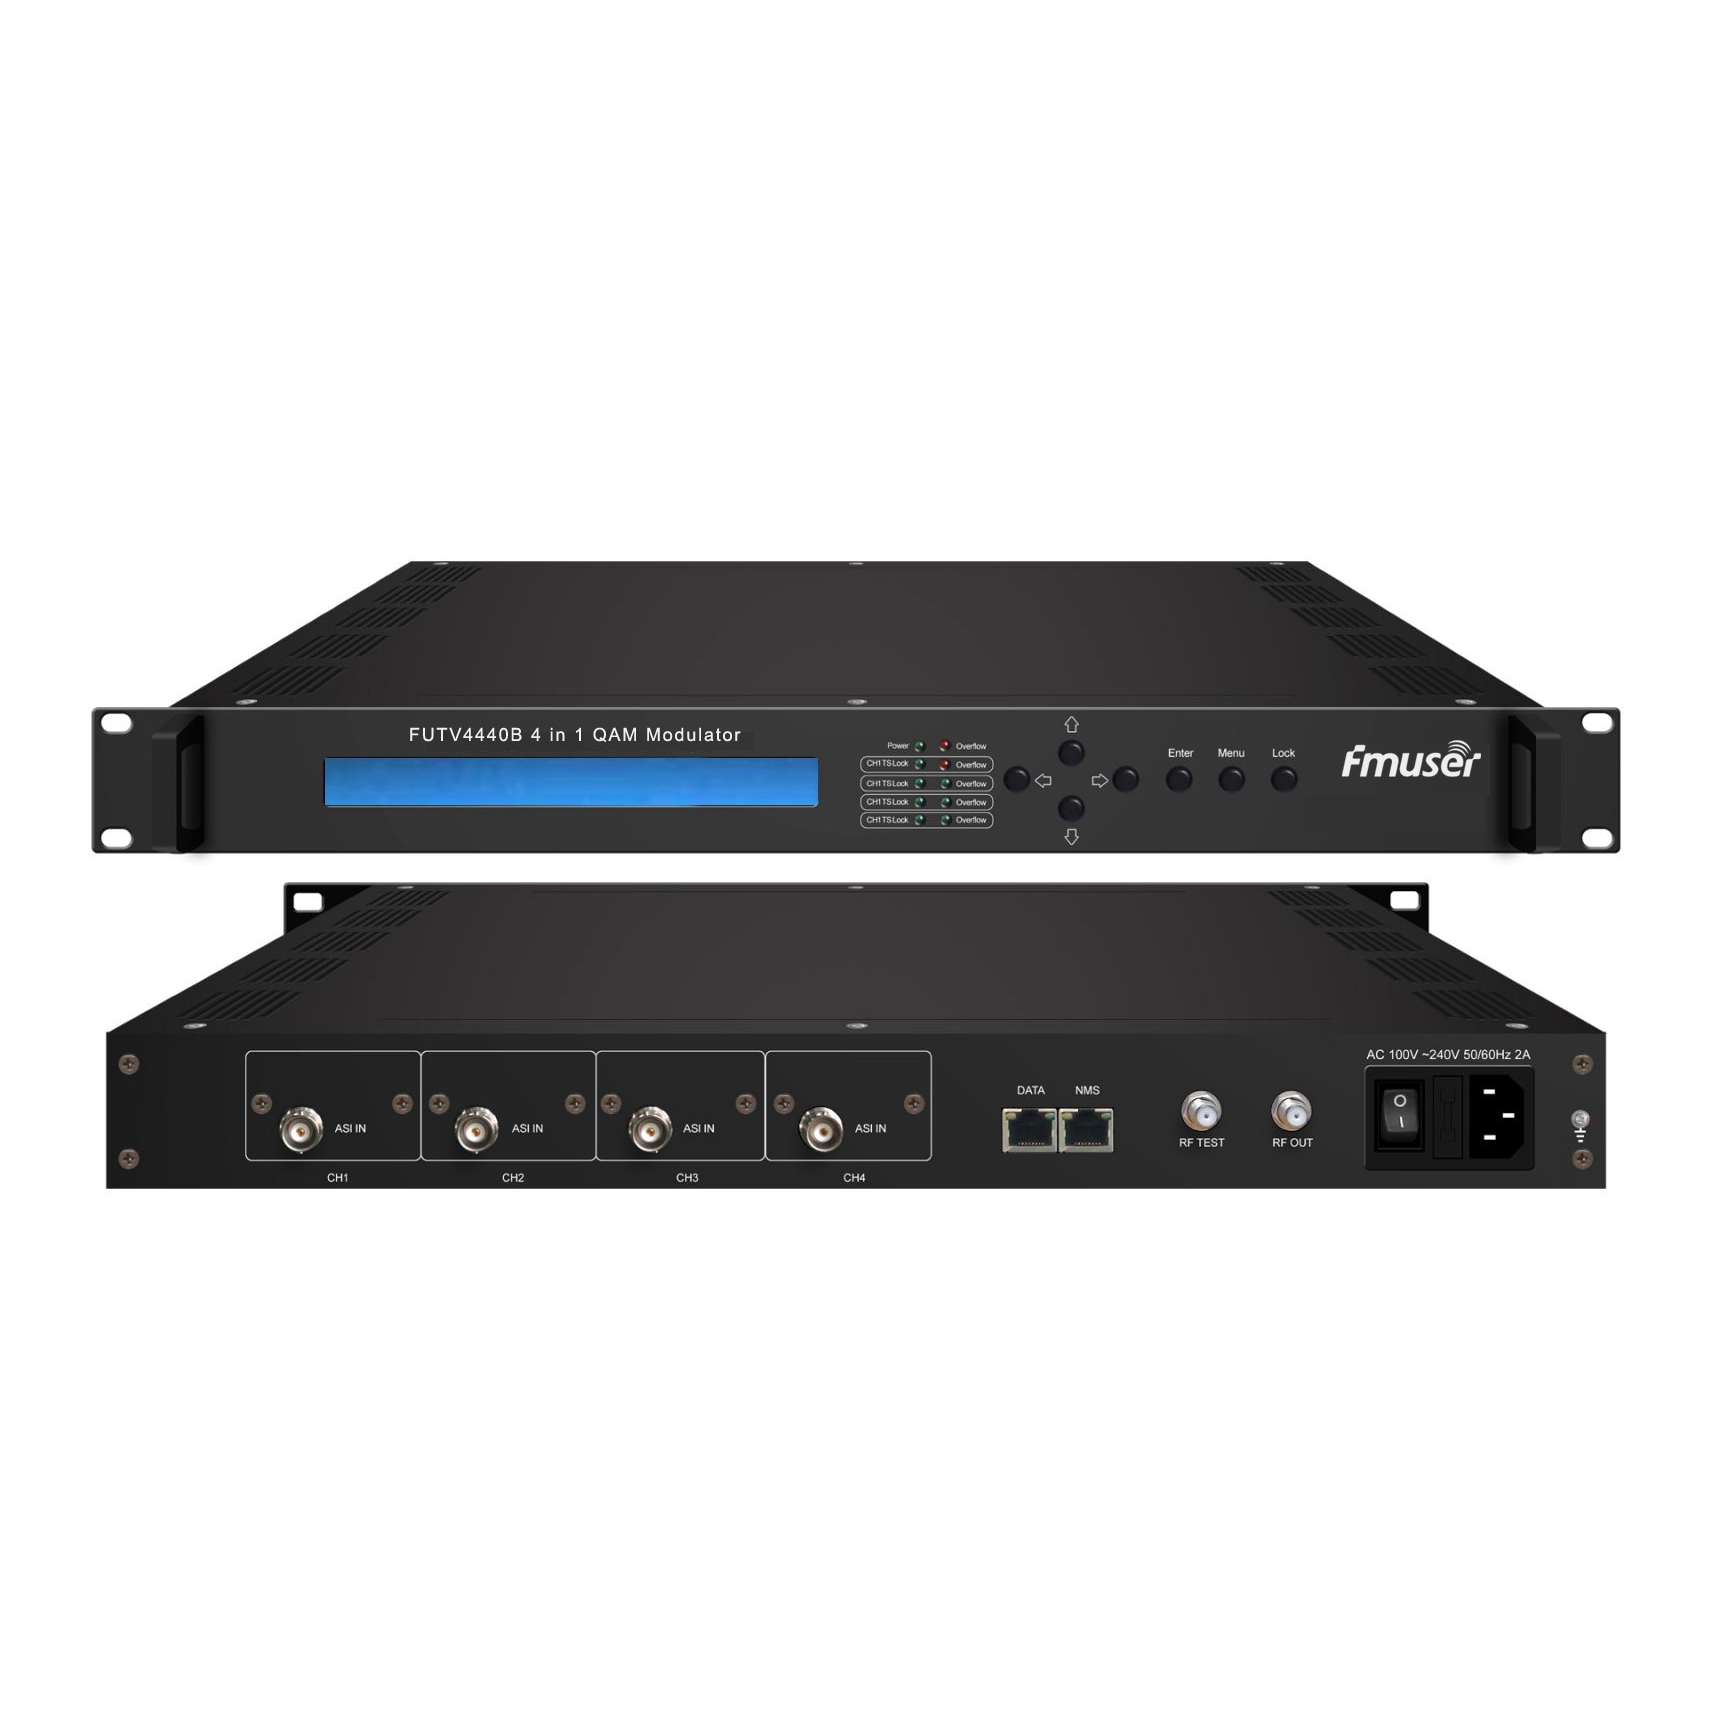 FMUSER FUTV4440B 4 i 1 QAM Modulator (Valgfrit 4 * ASI / 4 * QAM / 4 * DVB-S tuner / 4 * DVB-S2 tuner Input, RF Output) med Network ledelse